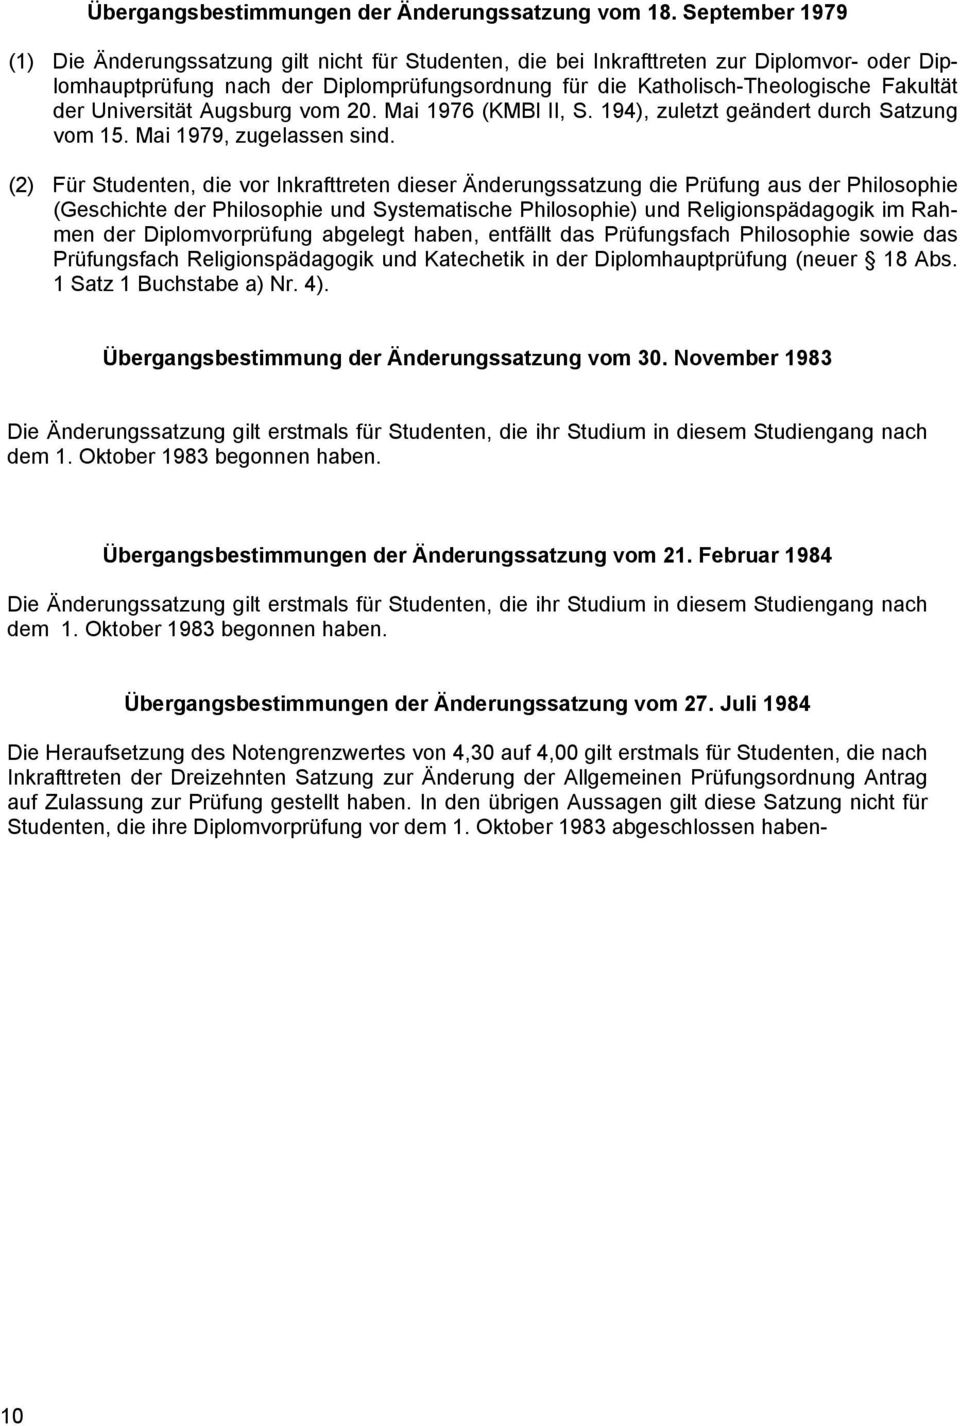 der Universität Augsburg vom 20. Mai 1976 (KMBl II, S. 194), zuletzt geändert durch Satzung vom 15. Mai 1979, zugelassen sind.